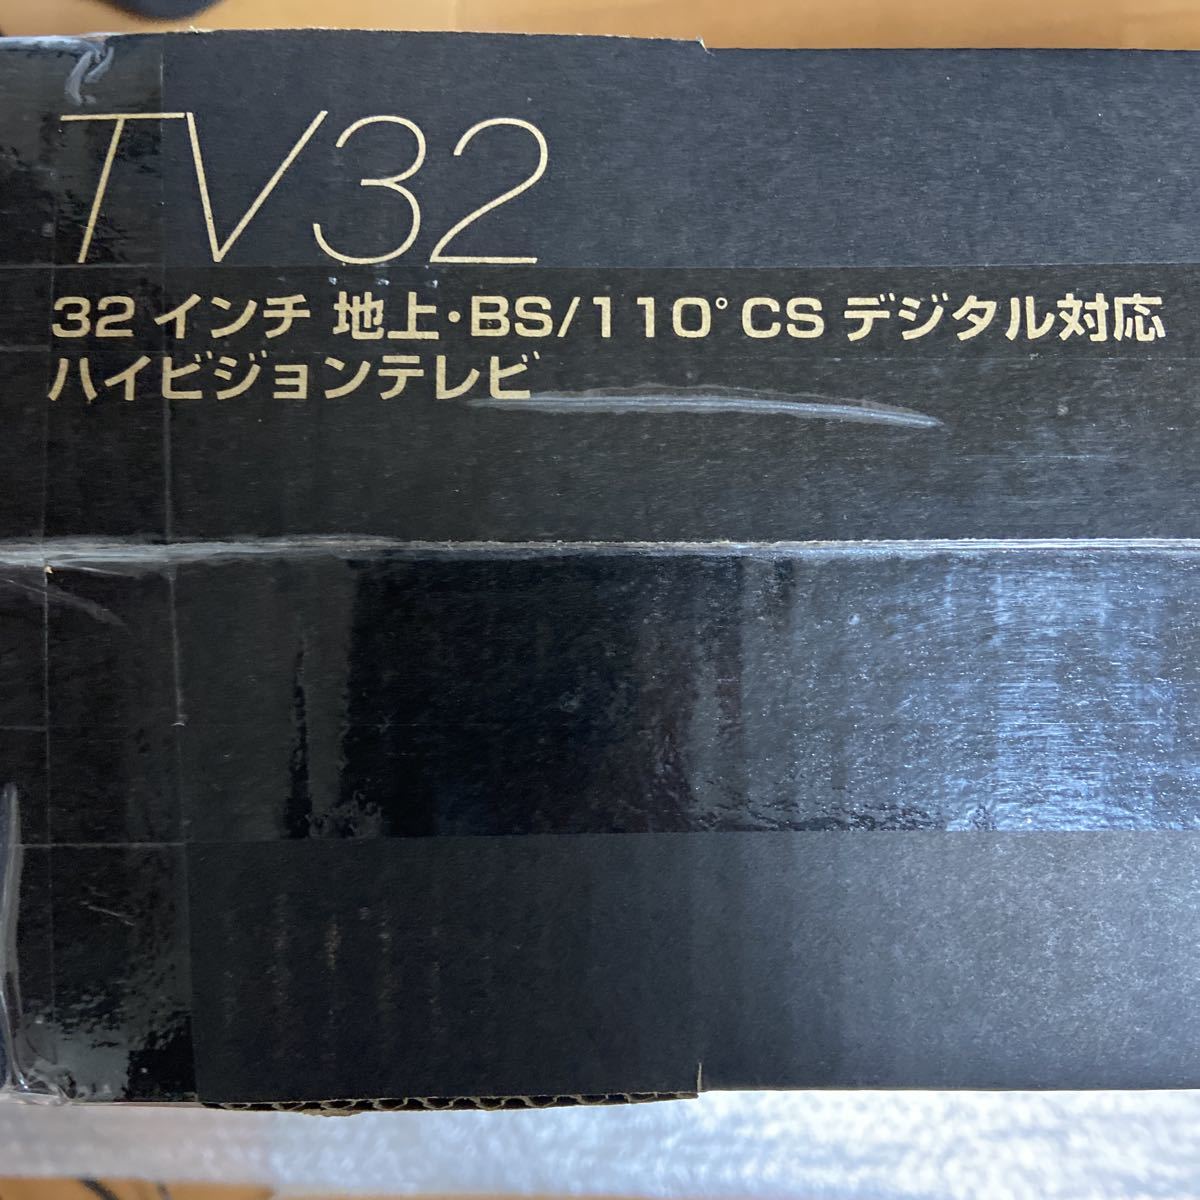  новый товар TV32 дюймовый наземный BS 110*CS цифровой соответствует Hi-Vision жидкокристаллический телевизор двойной тюнер установка обратная сторона номер комплект отсутствие запись соответствует установленный снаружи HDD видеозапись соответствует DEED